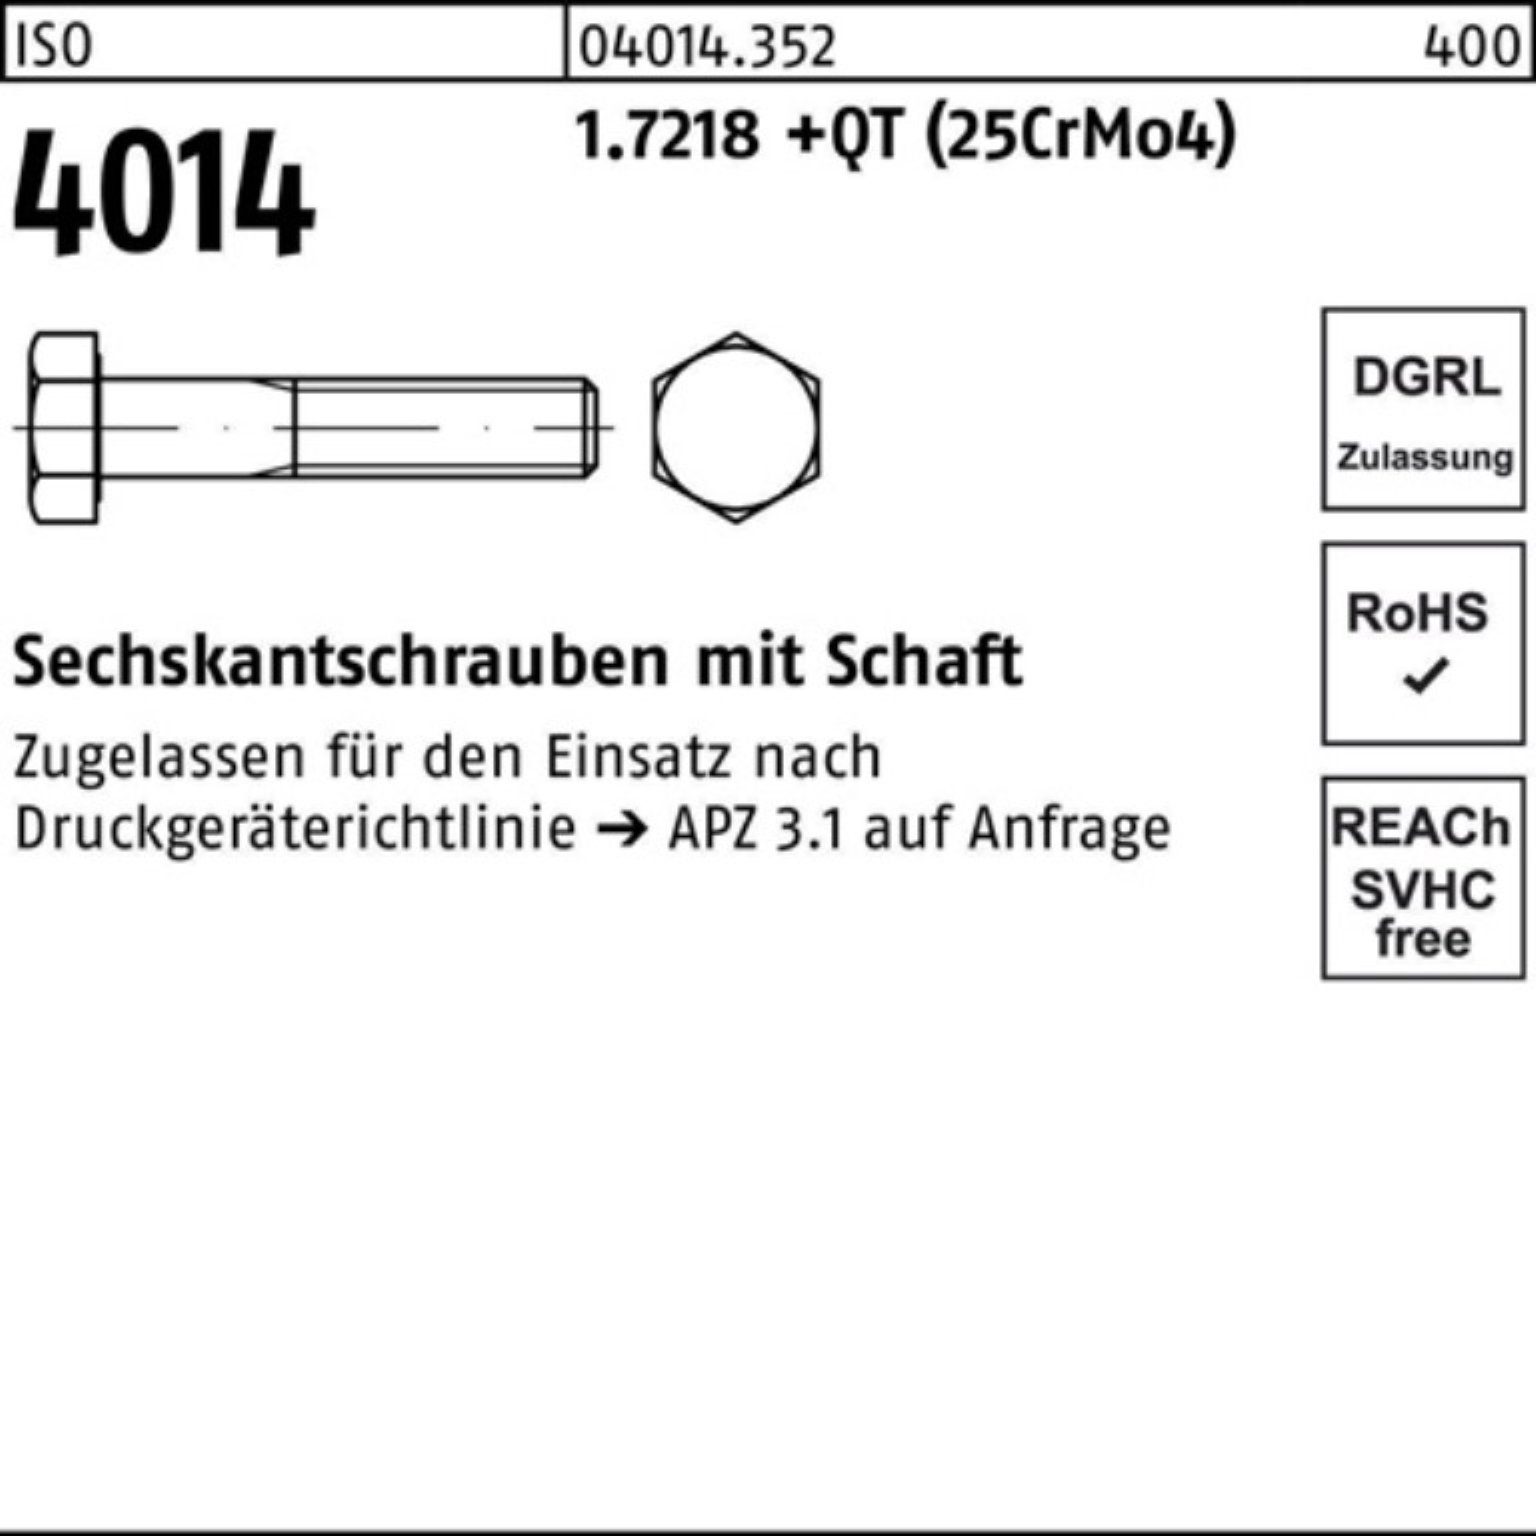 Bufab Sechskantschraube Sechskantschraube 85 100er 4014 ISO M16x +QT 1.7218 (25CrM Schaft Pack